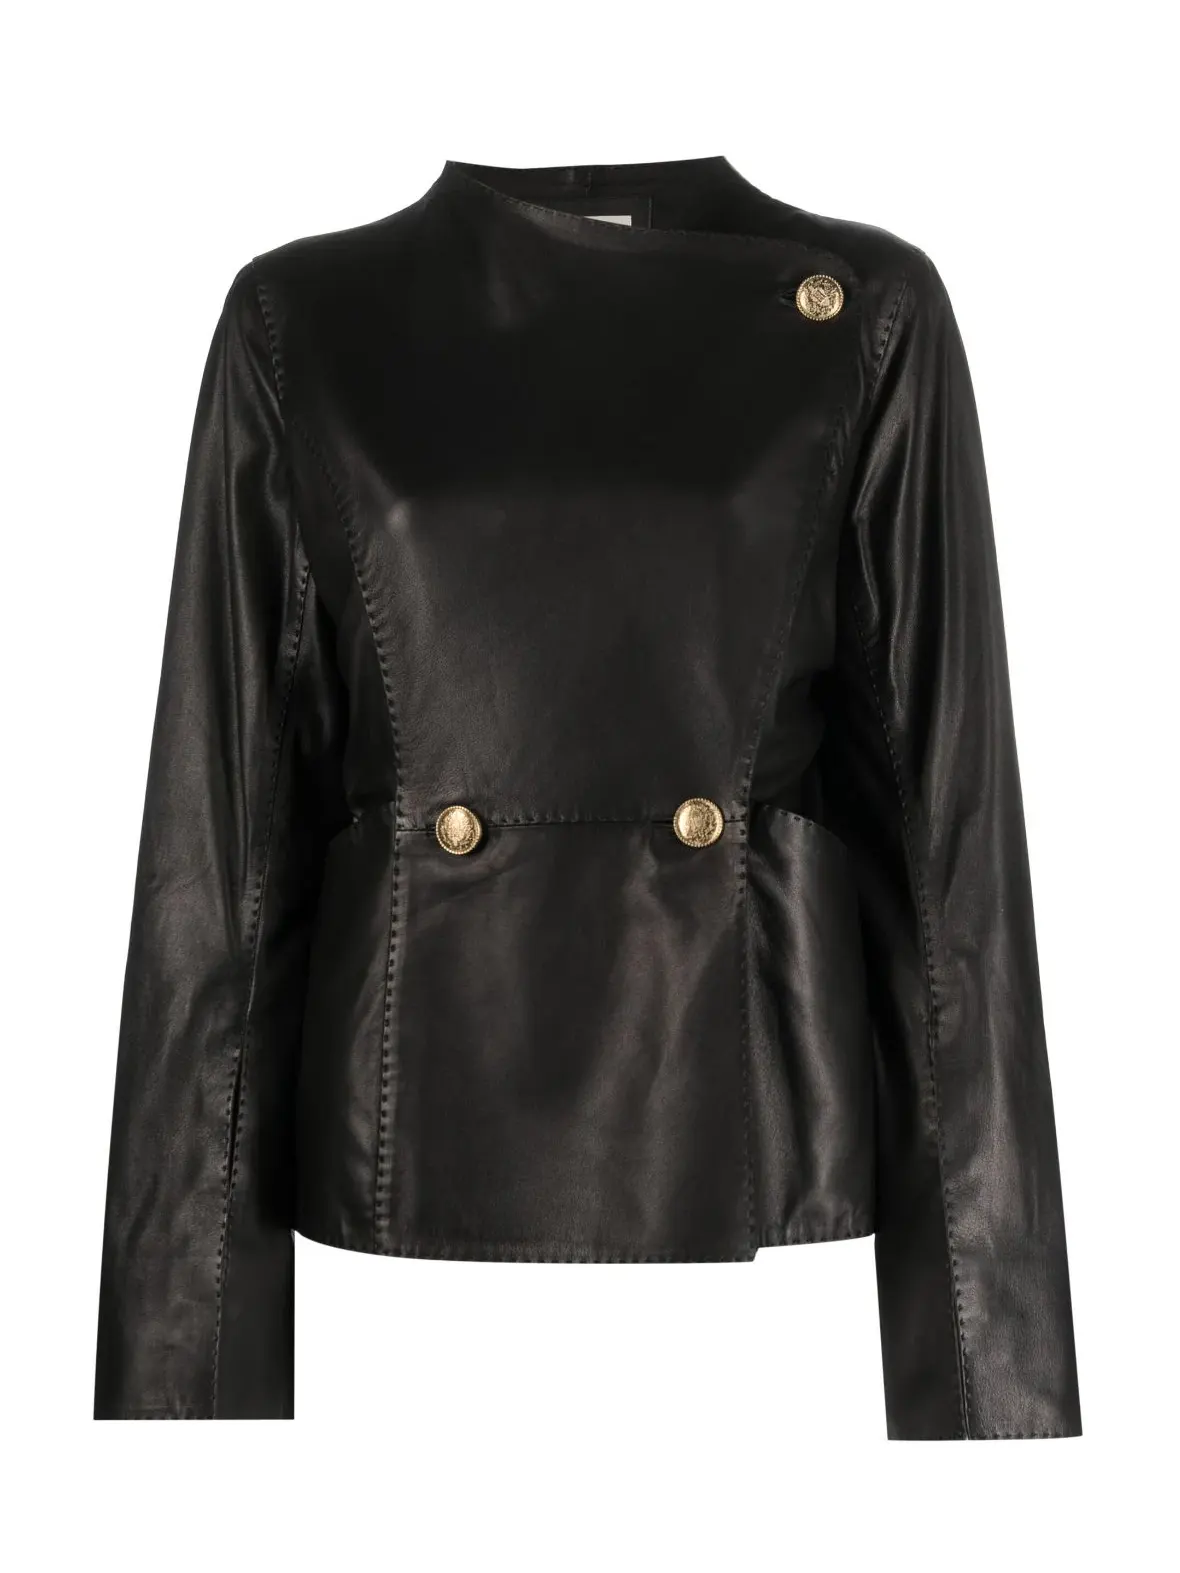 SELMAS cropped leather jacket, black, Malene Birger